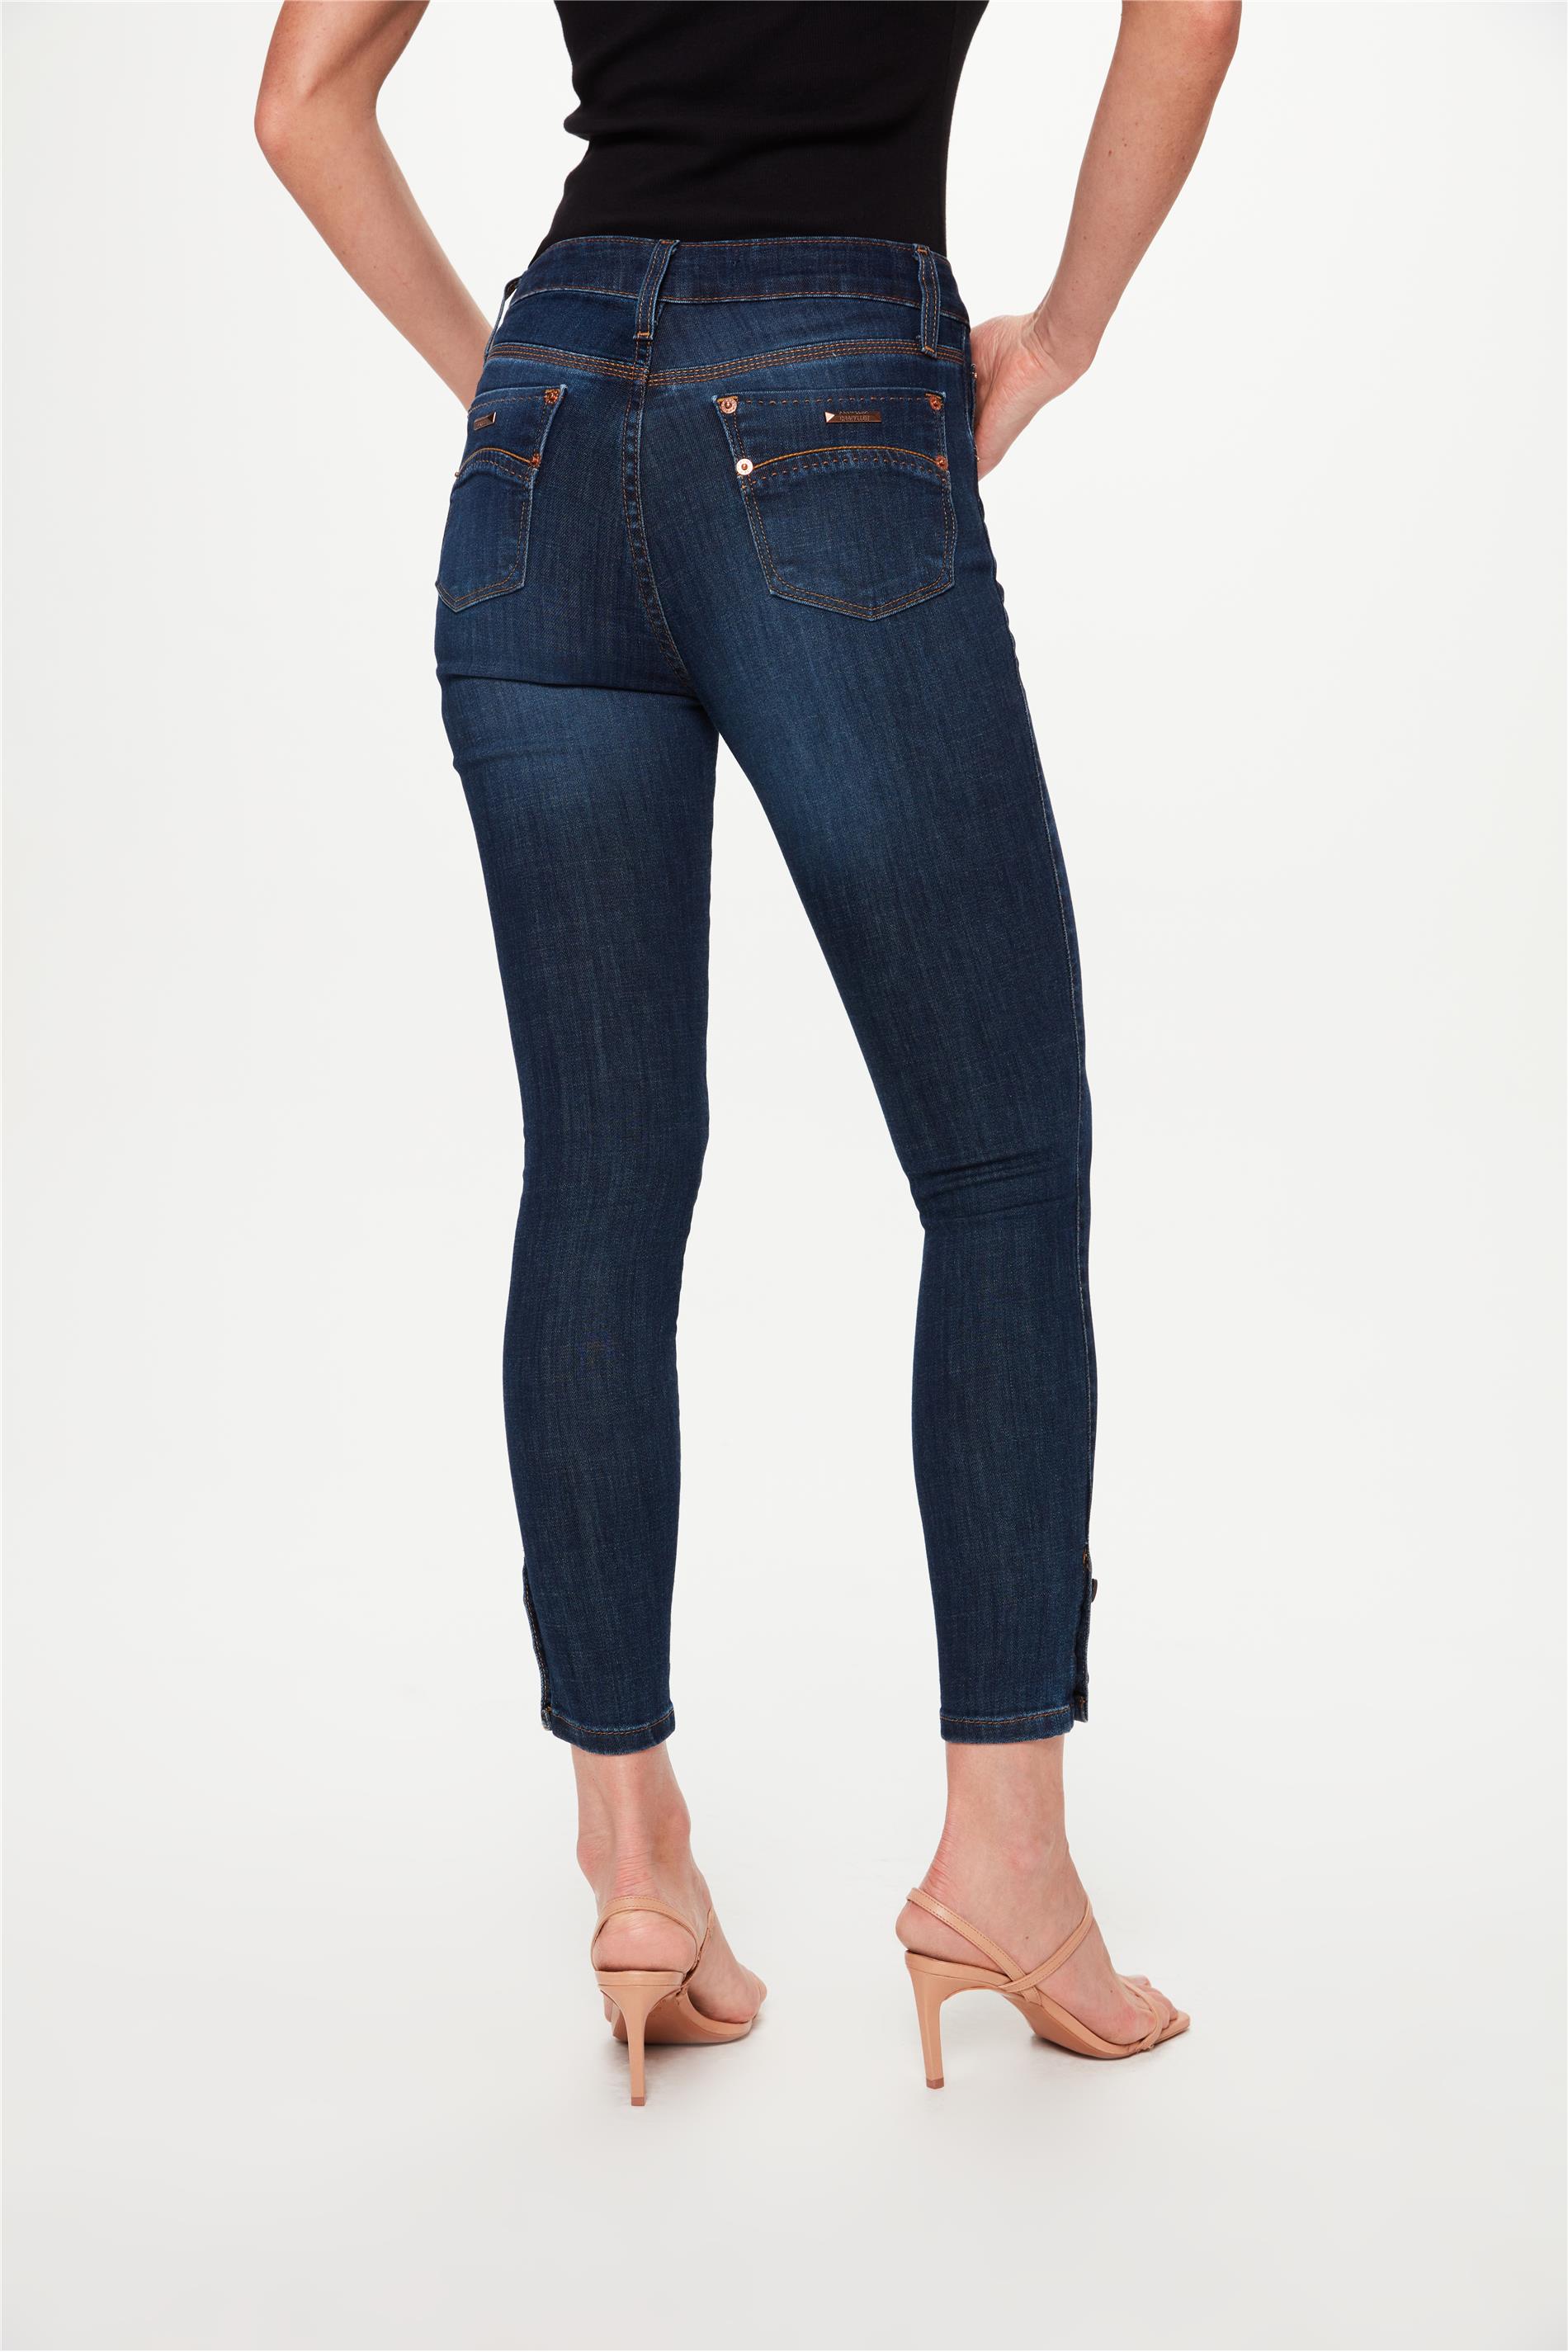 Calça Jeans Skinny Versátil * Escuro, Bolsos Slim Fit e Botão Abotoado  Calças Jeans Casual, Calça Jeans Feminina e Roupas